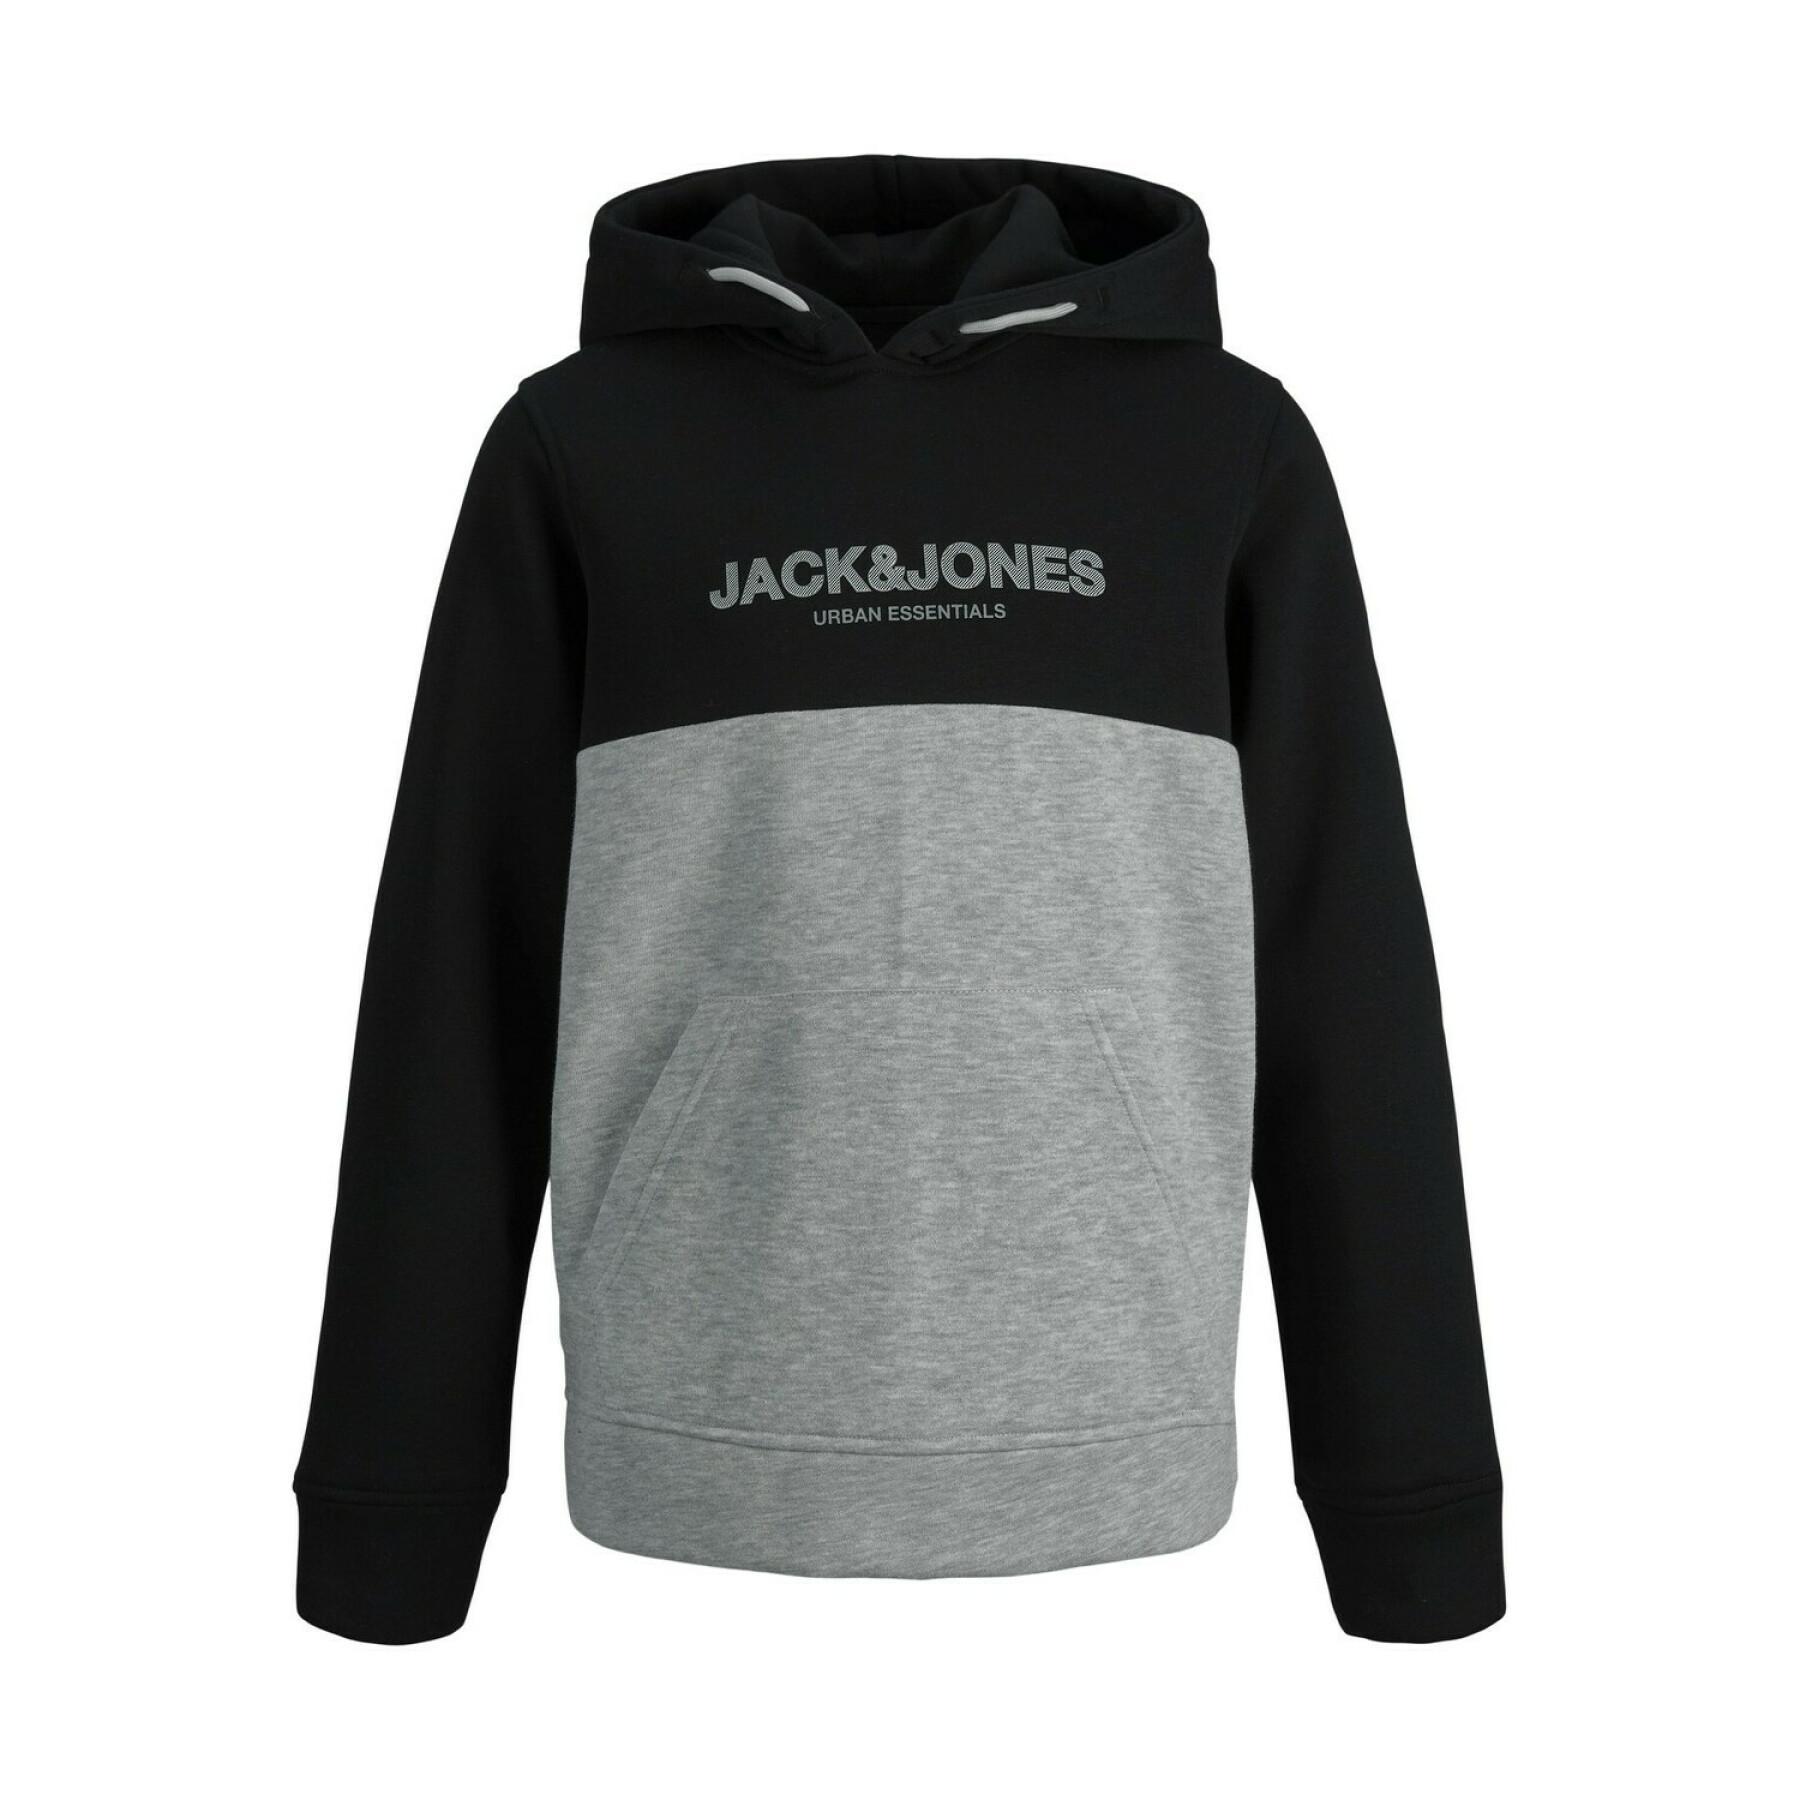 Sudadera con capucha para niños Jack & Jones Urban